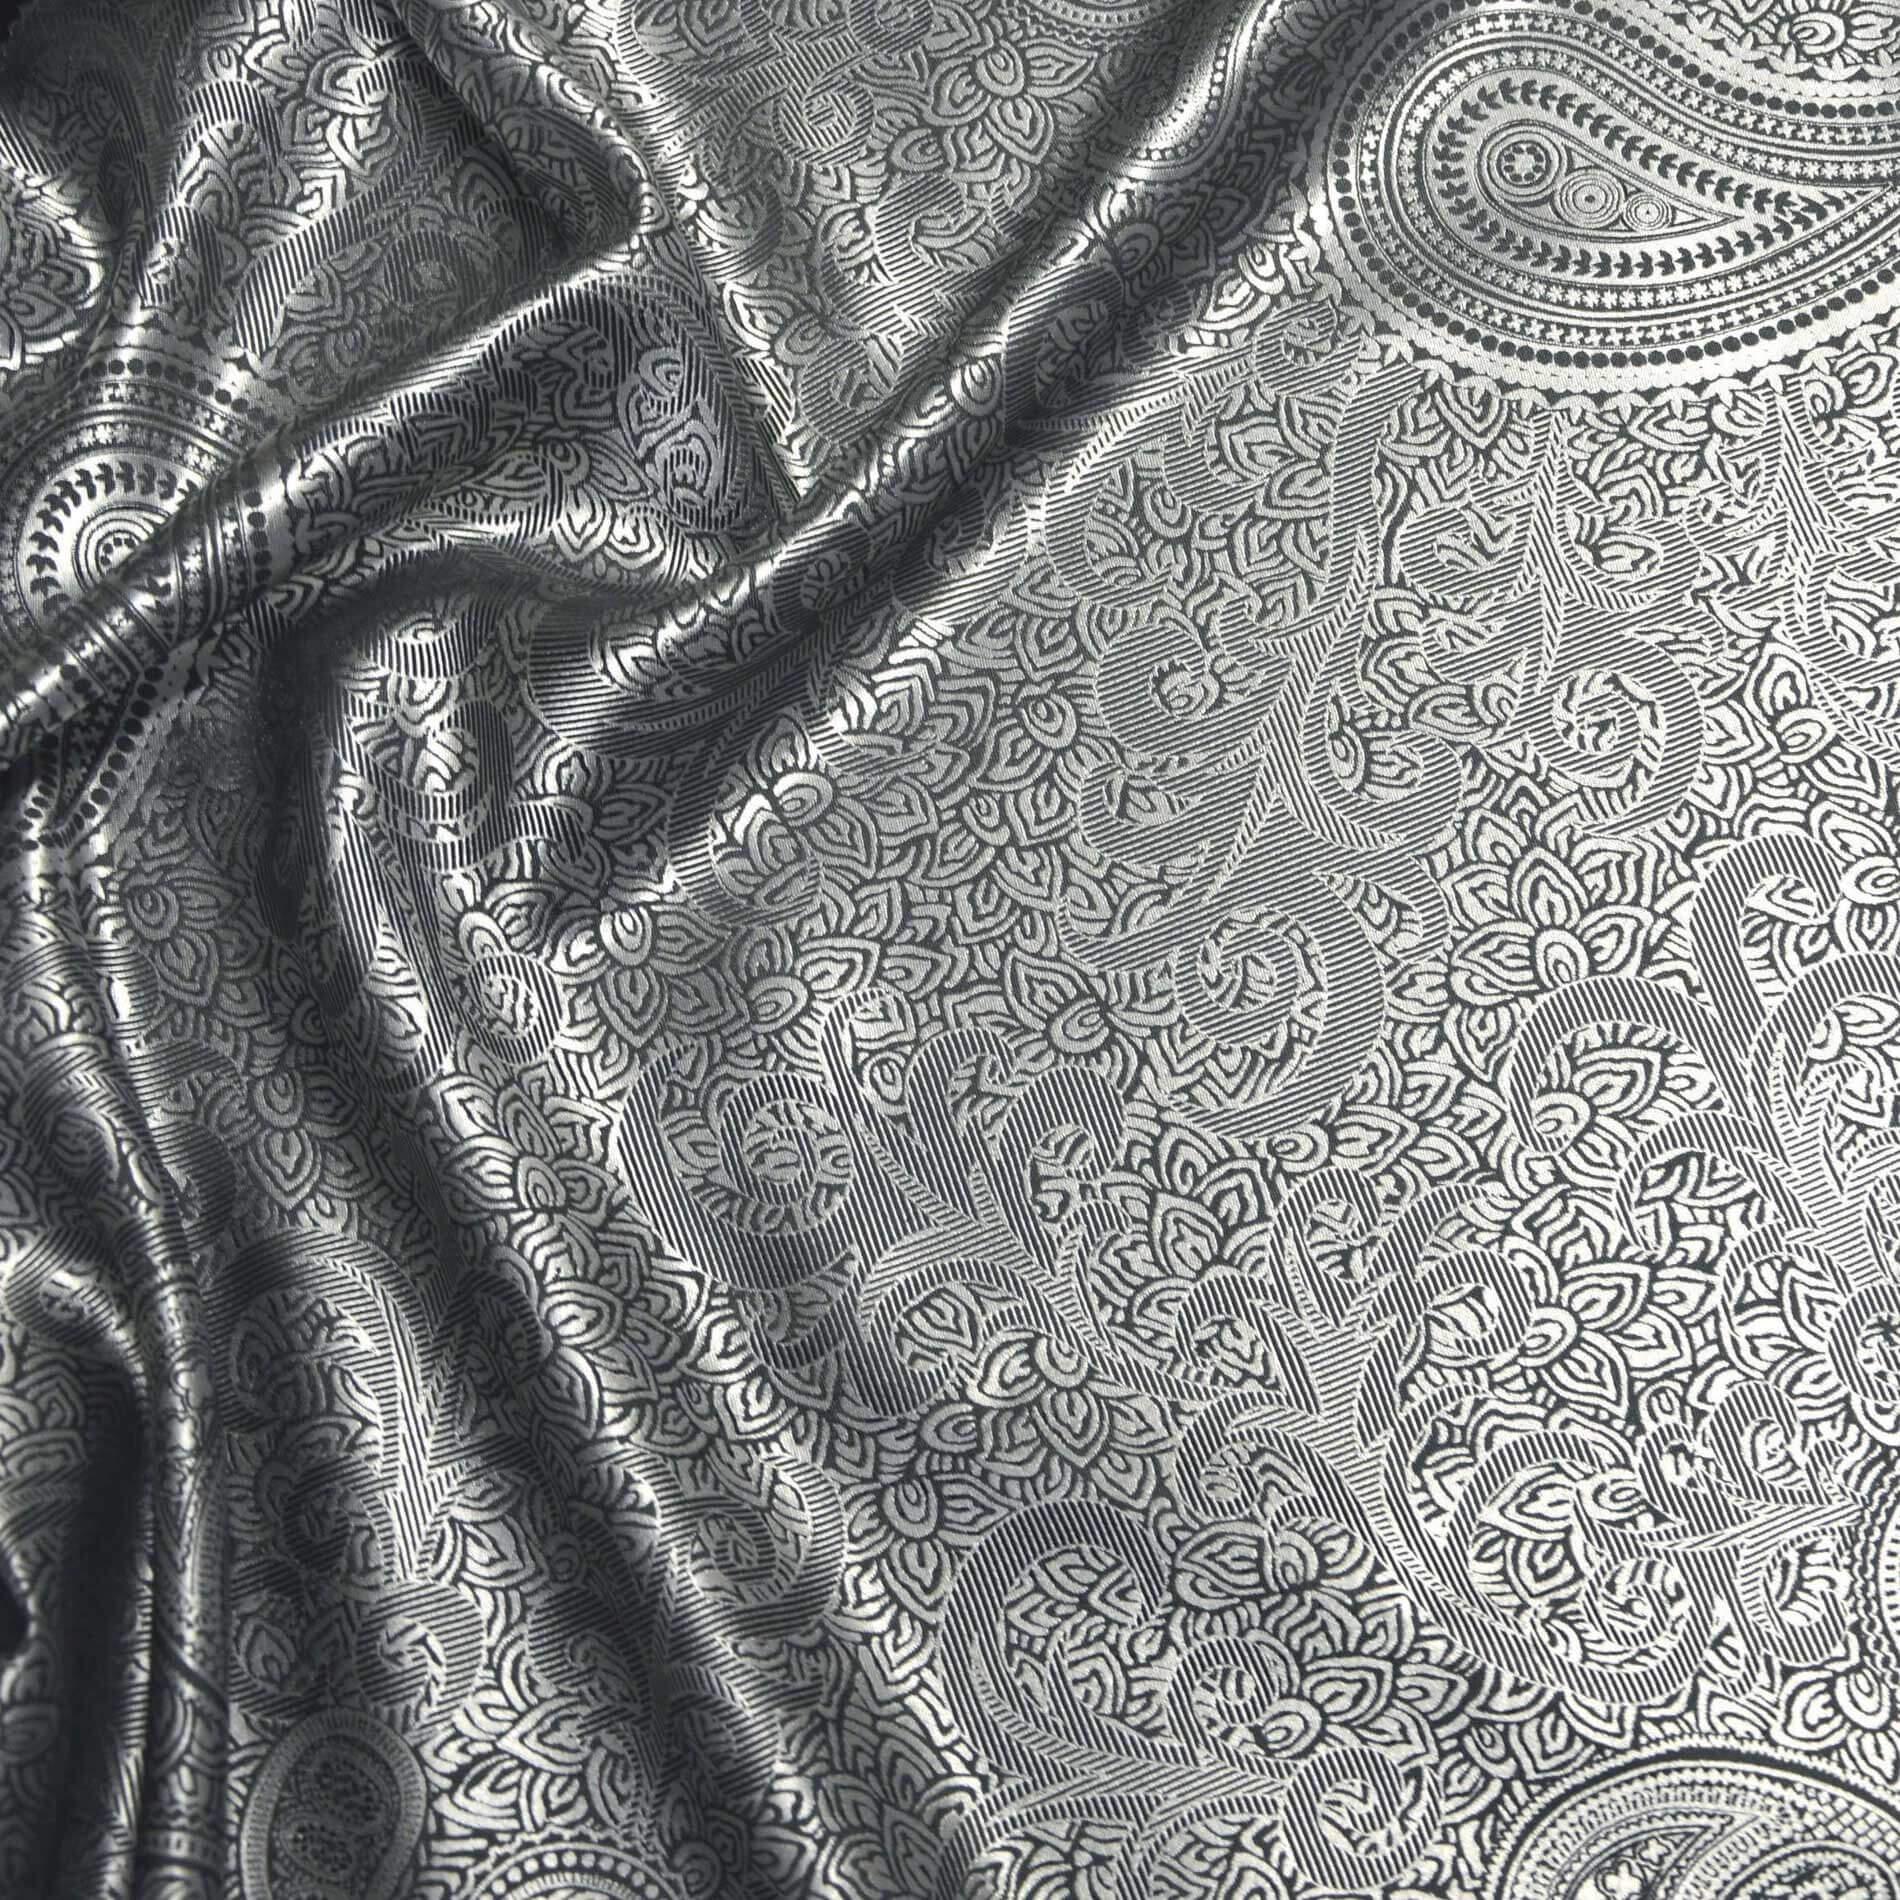 Мужской халат Robe Male Silk